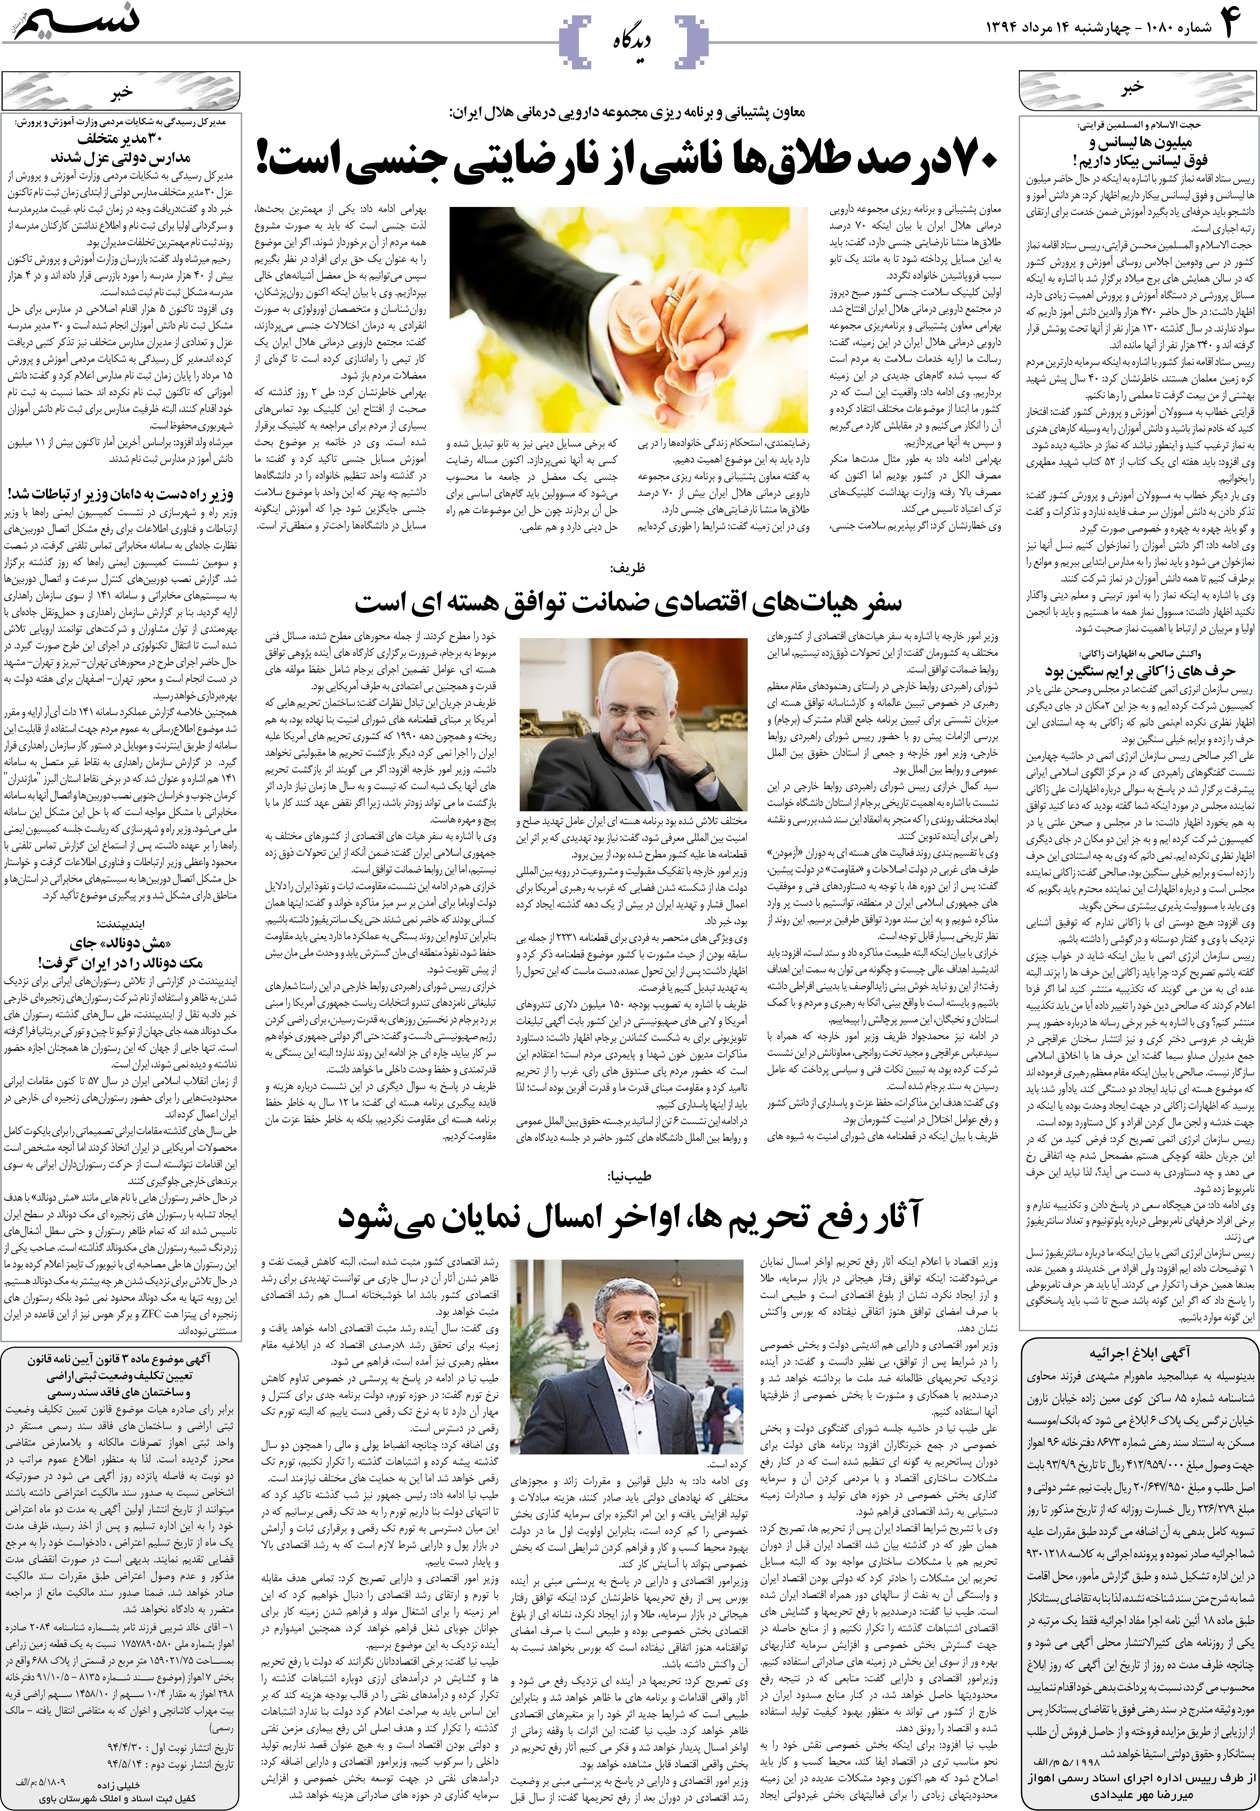 صفحه دیدگاه روزنامه نسیم شماره 1080